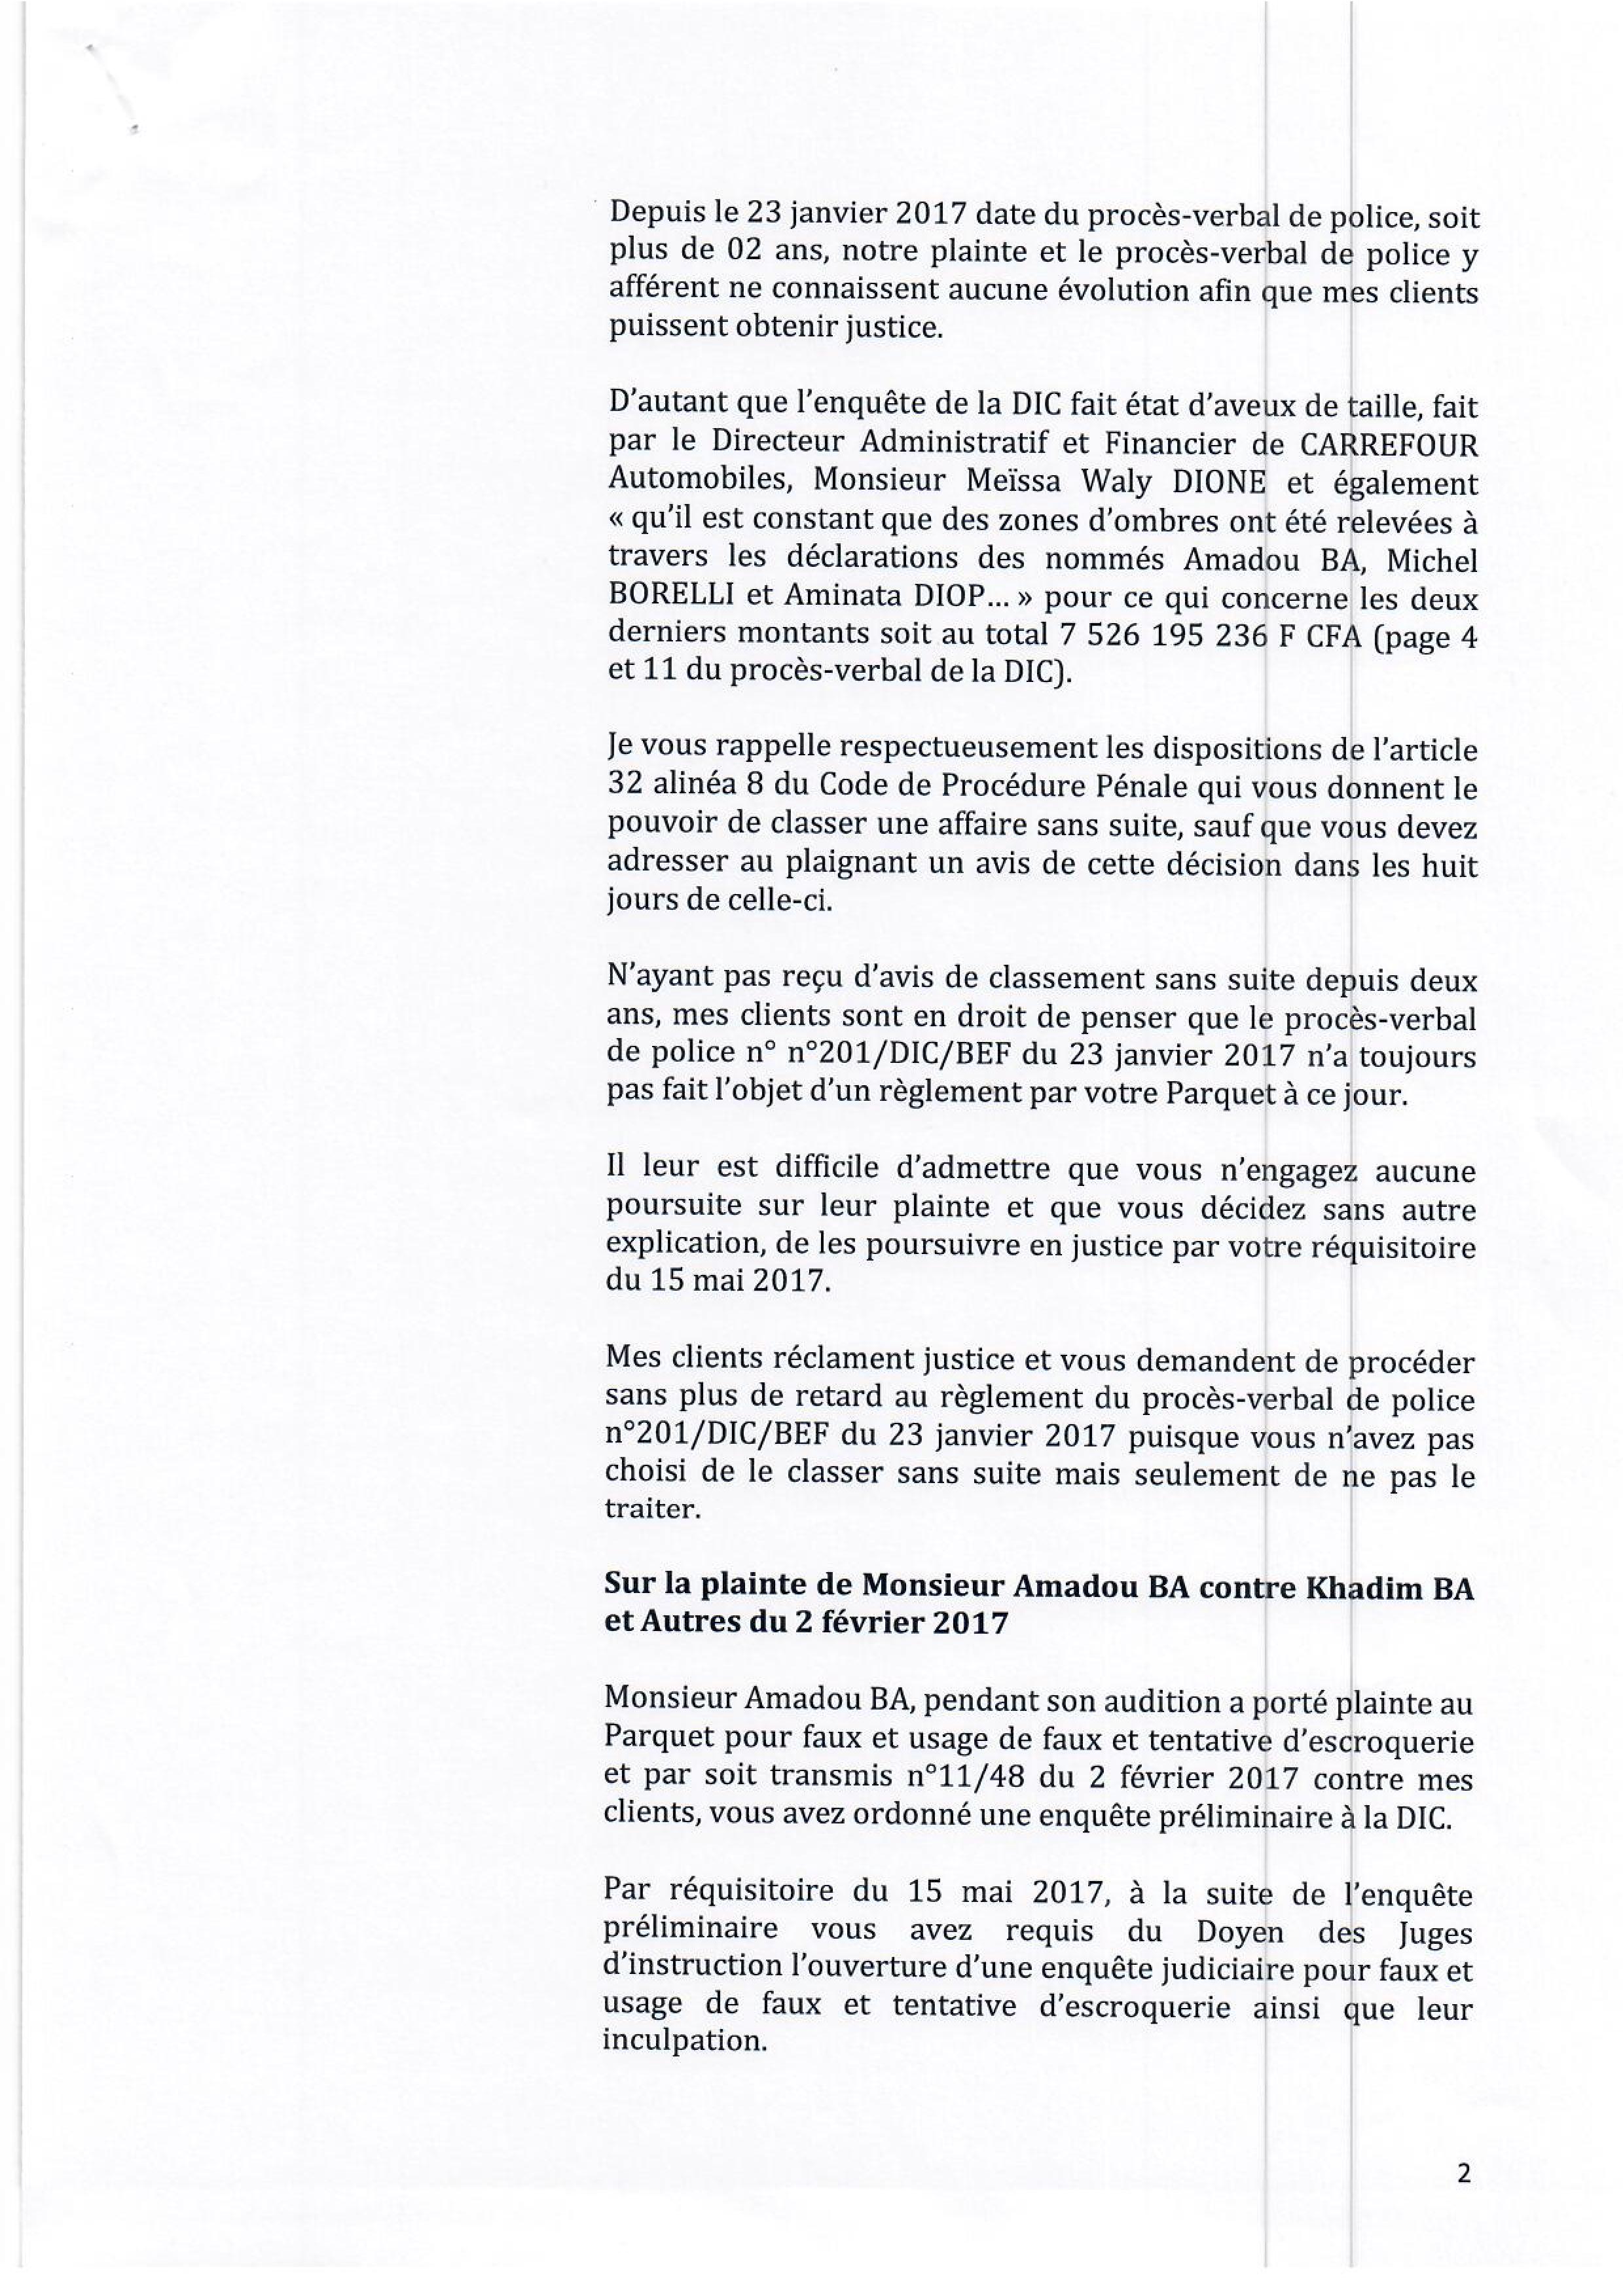 Aux origines de l’affaire Carrefour automobile : Amadou Ba accusé de malversations portant sur 27 milliards… ( Documents )